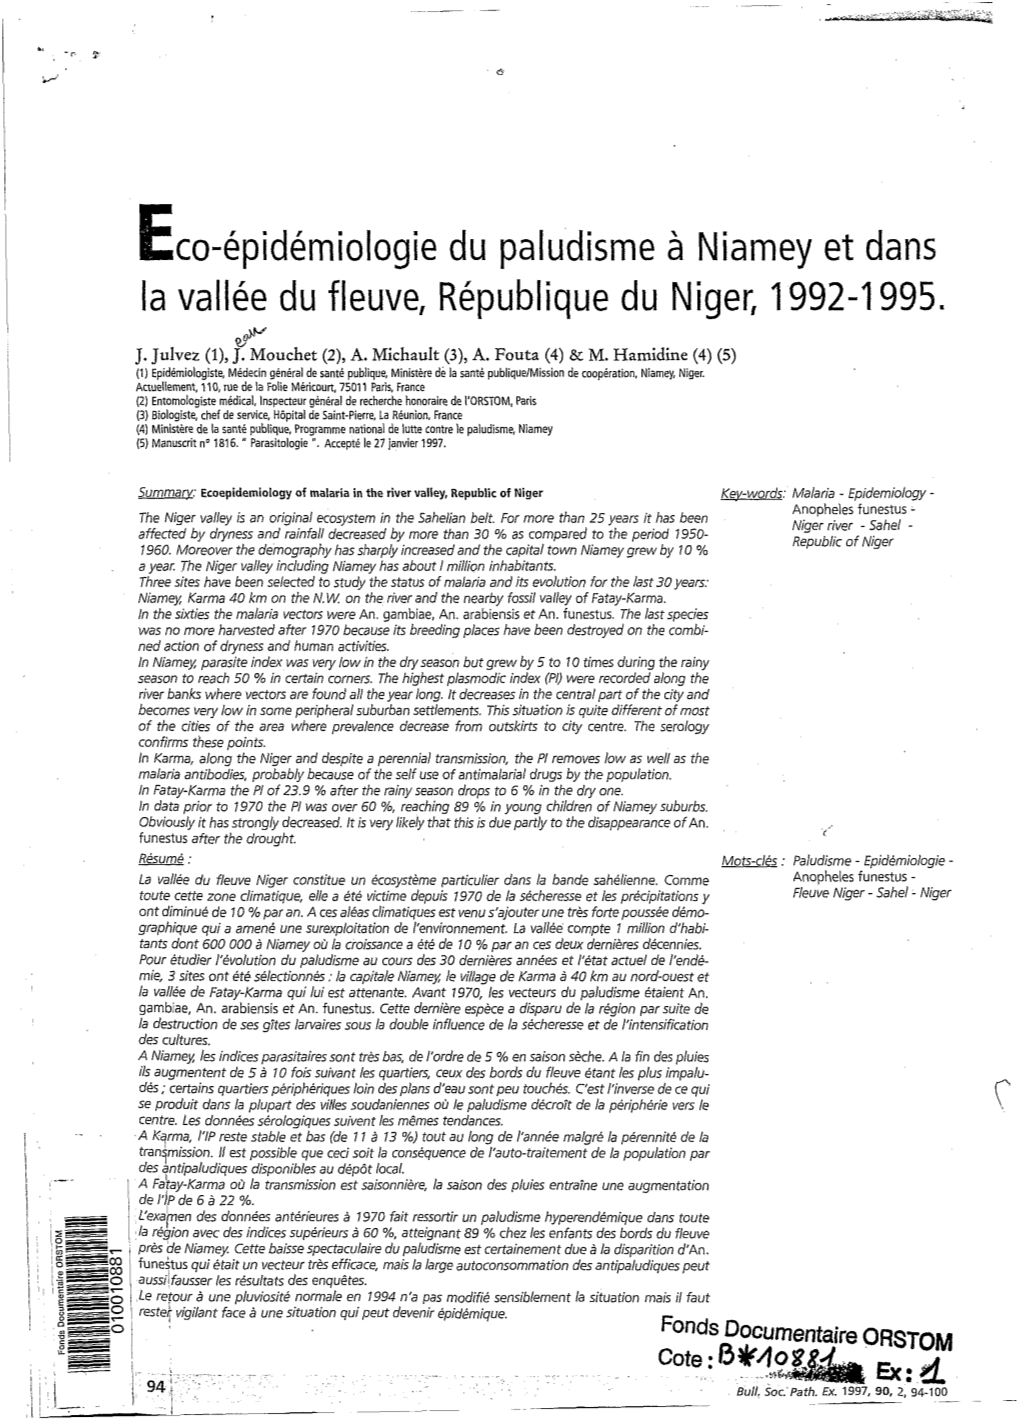 Eco-Épidémiologie Du Paludisme À Niamey Et Dans La Vallée Du Fleuve